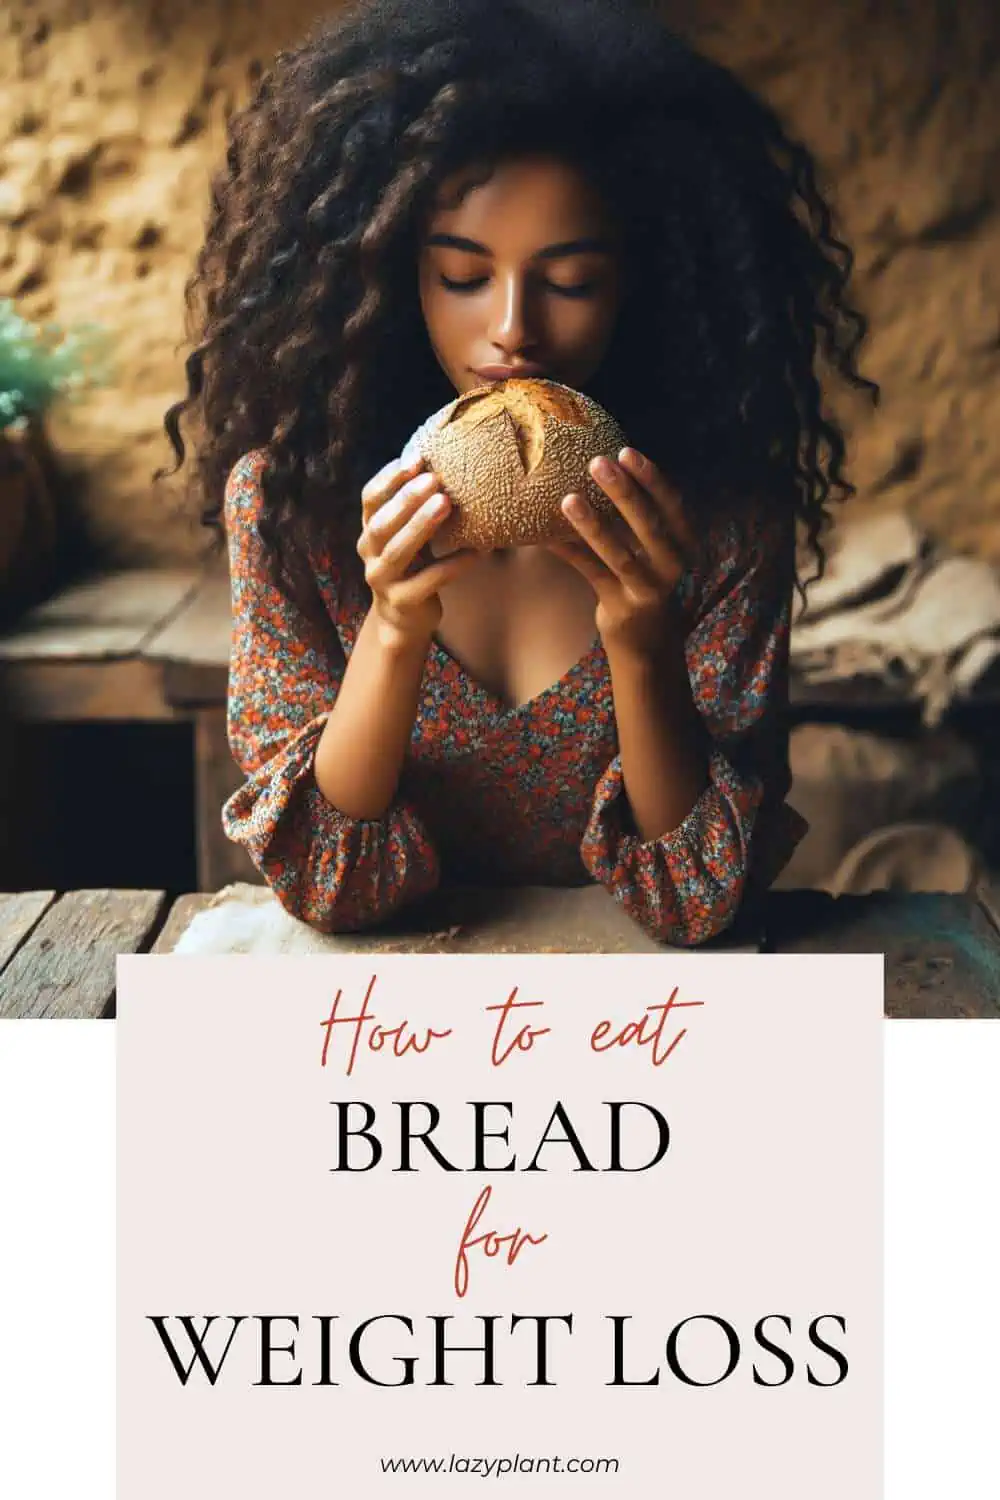 Bread recipe ideas for a lean body!